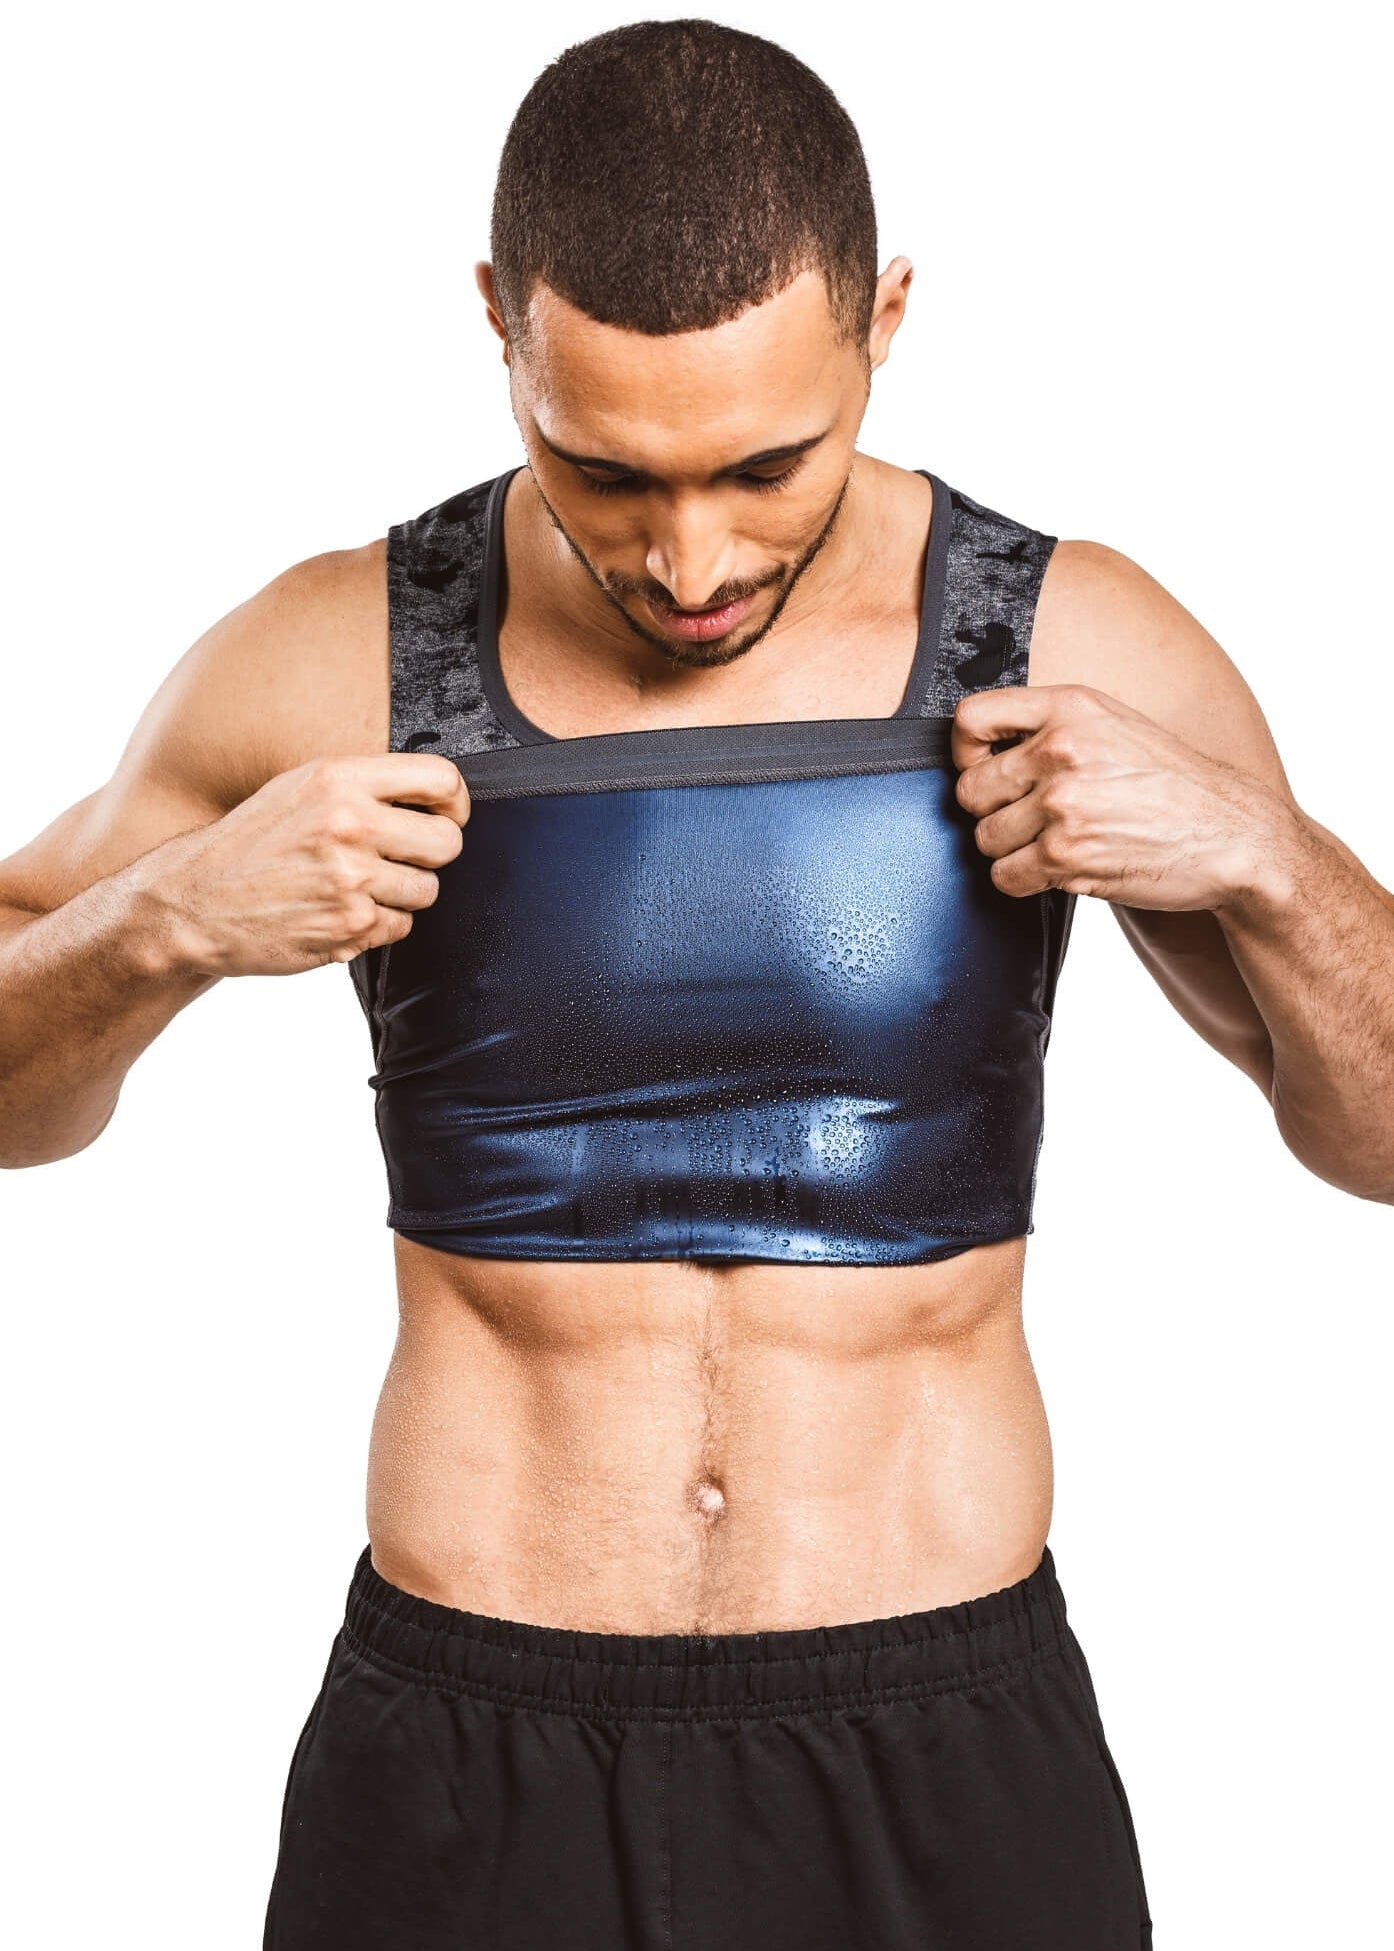 Importikaah Venim Sweat Shaper Vest for Men Polymer Shape wear Workout